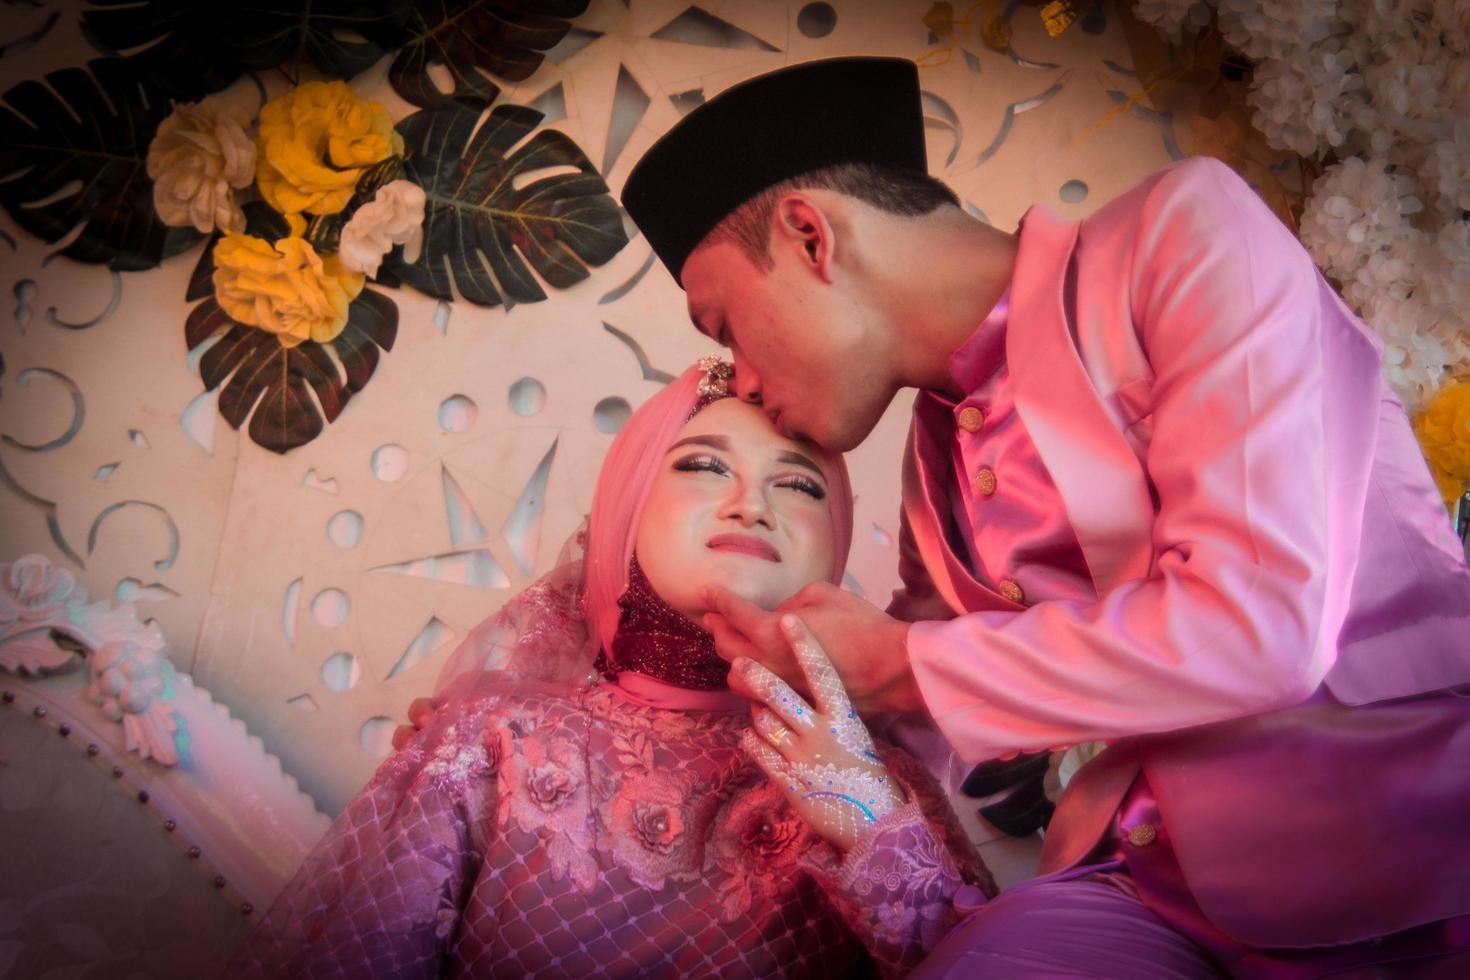 cianjur regency, west java, indonesia il 12 giugno 2021, una coppia di innamorati si guarda l'un l'altro in procinto di baciarsi. foto